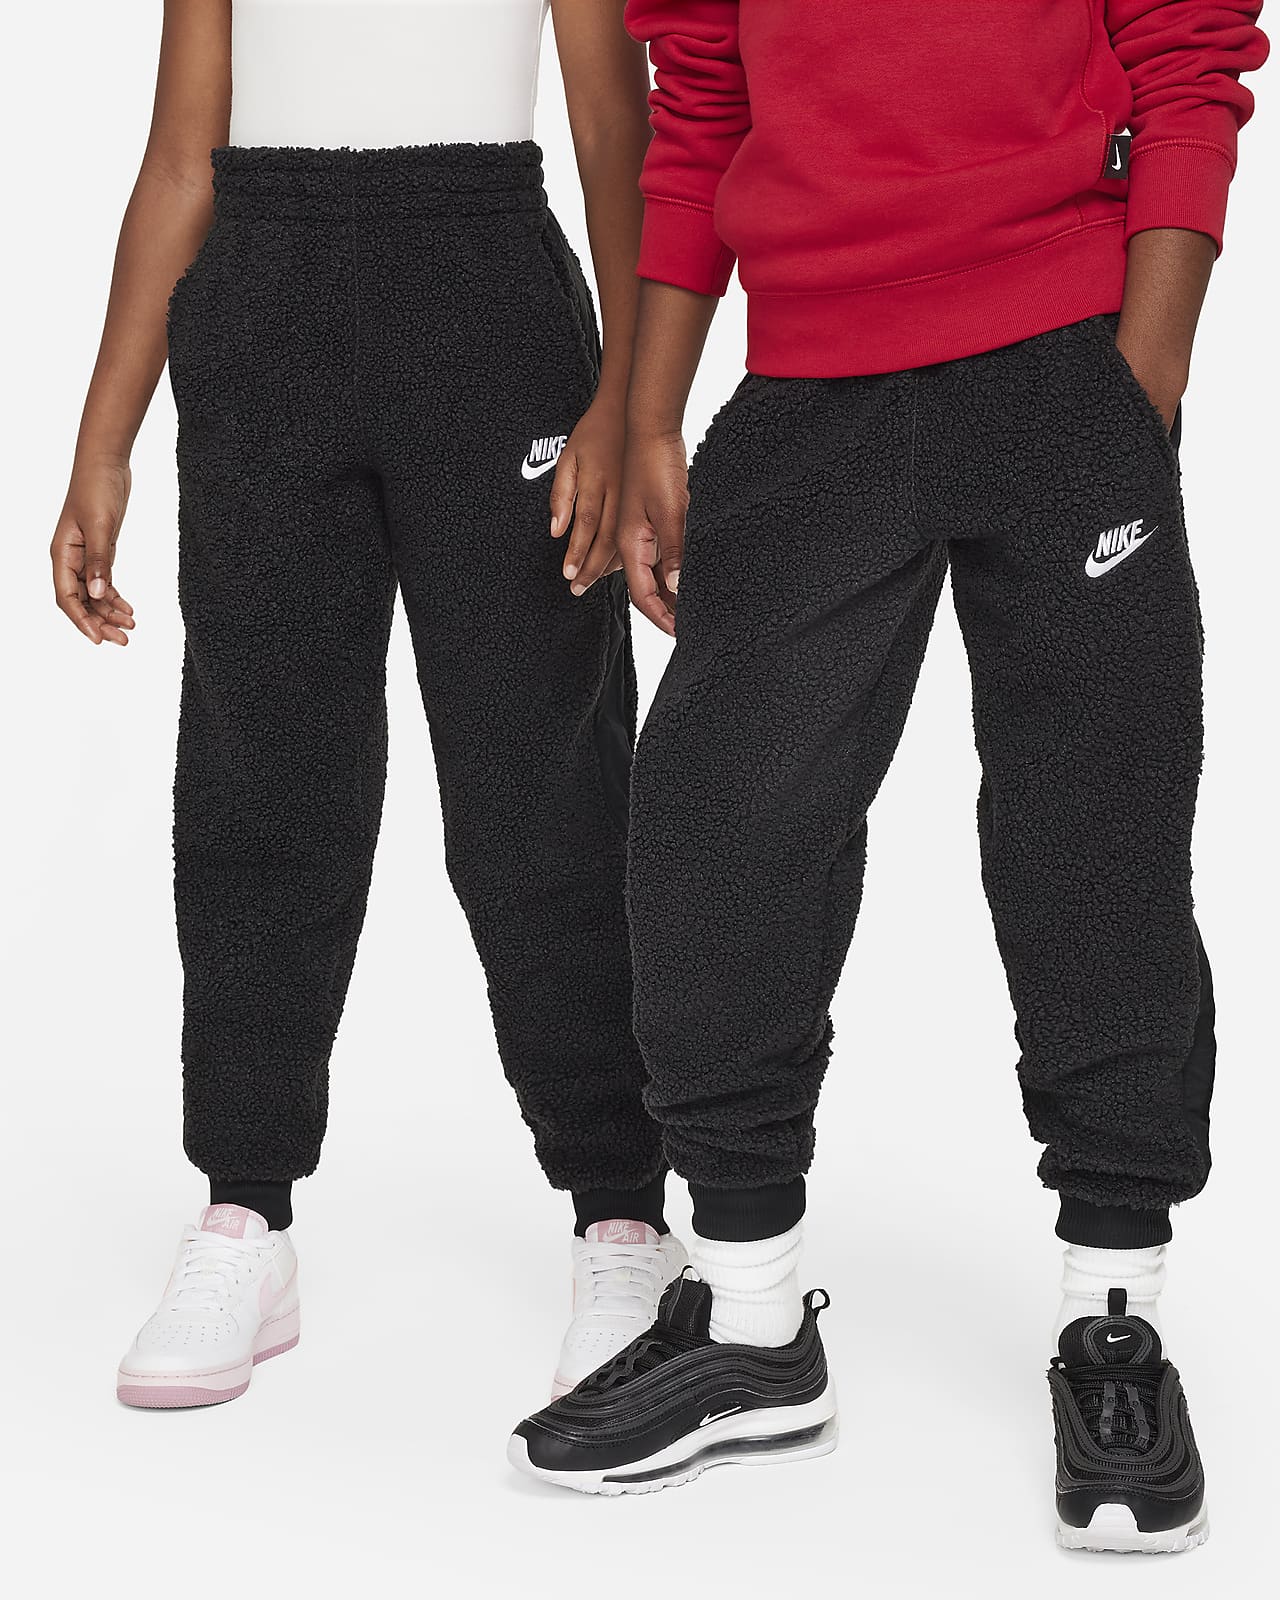 激安正規品 【未使用】Nike ナイキ 冬用 パンツ “ウインターライズド 